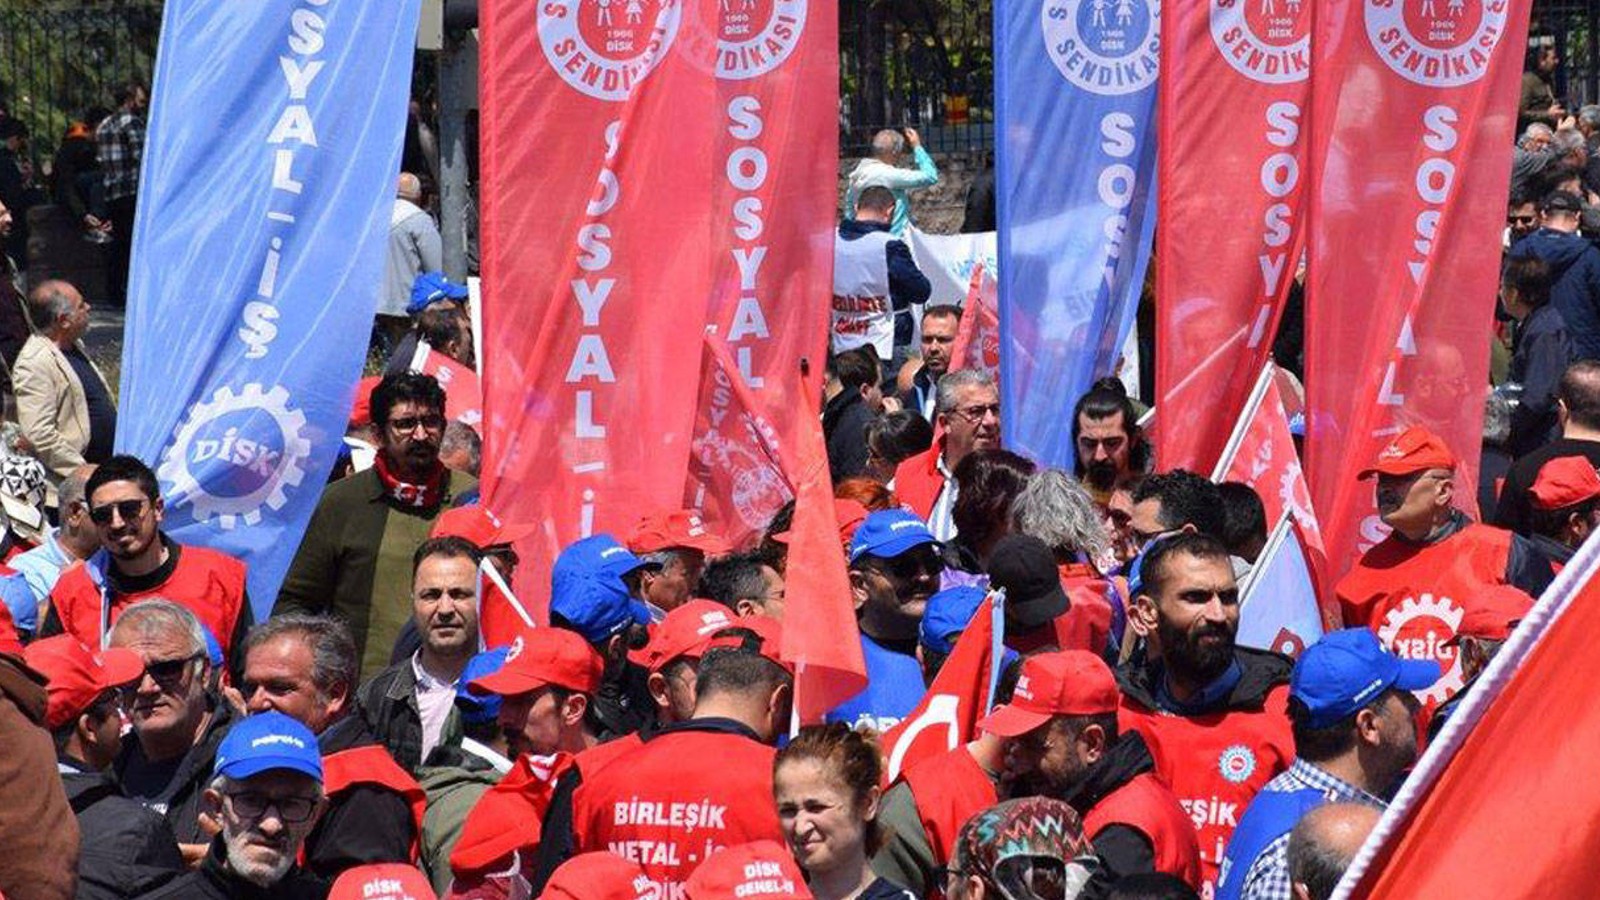 DİSK Sosyal İş Ankara Şubesi’nden Genel Kurul açıklaması: Katılmayacağız